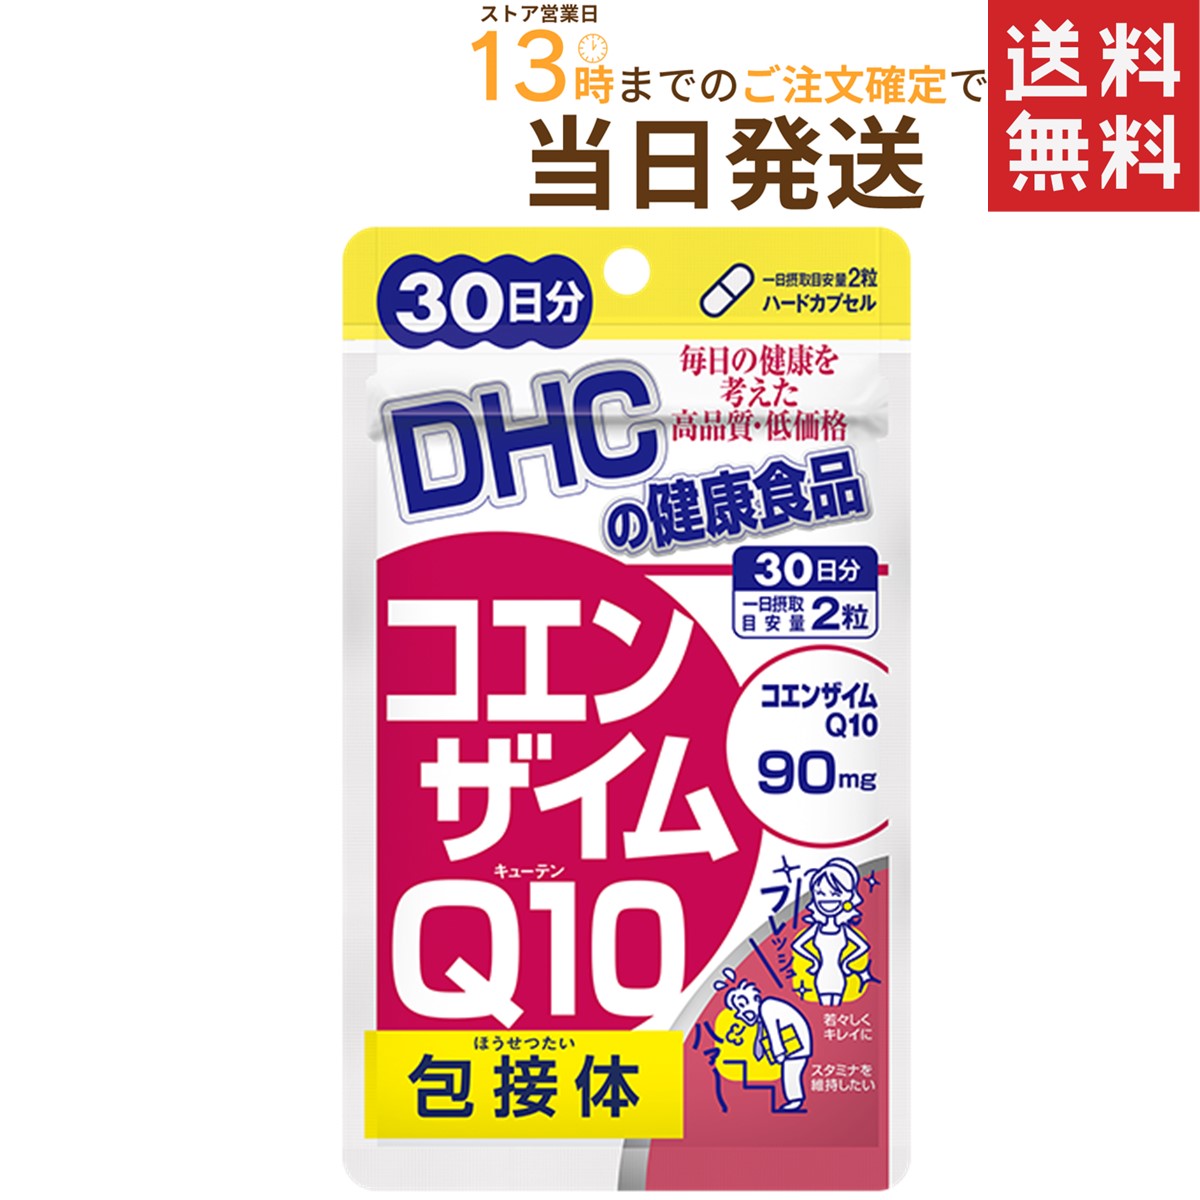 DHC DHC コエンザイムQ10 包接体 30日分 60粒 × 1個 コエンザイムQ10の商品画像